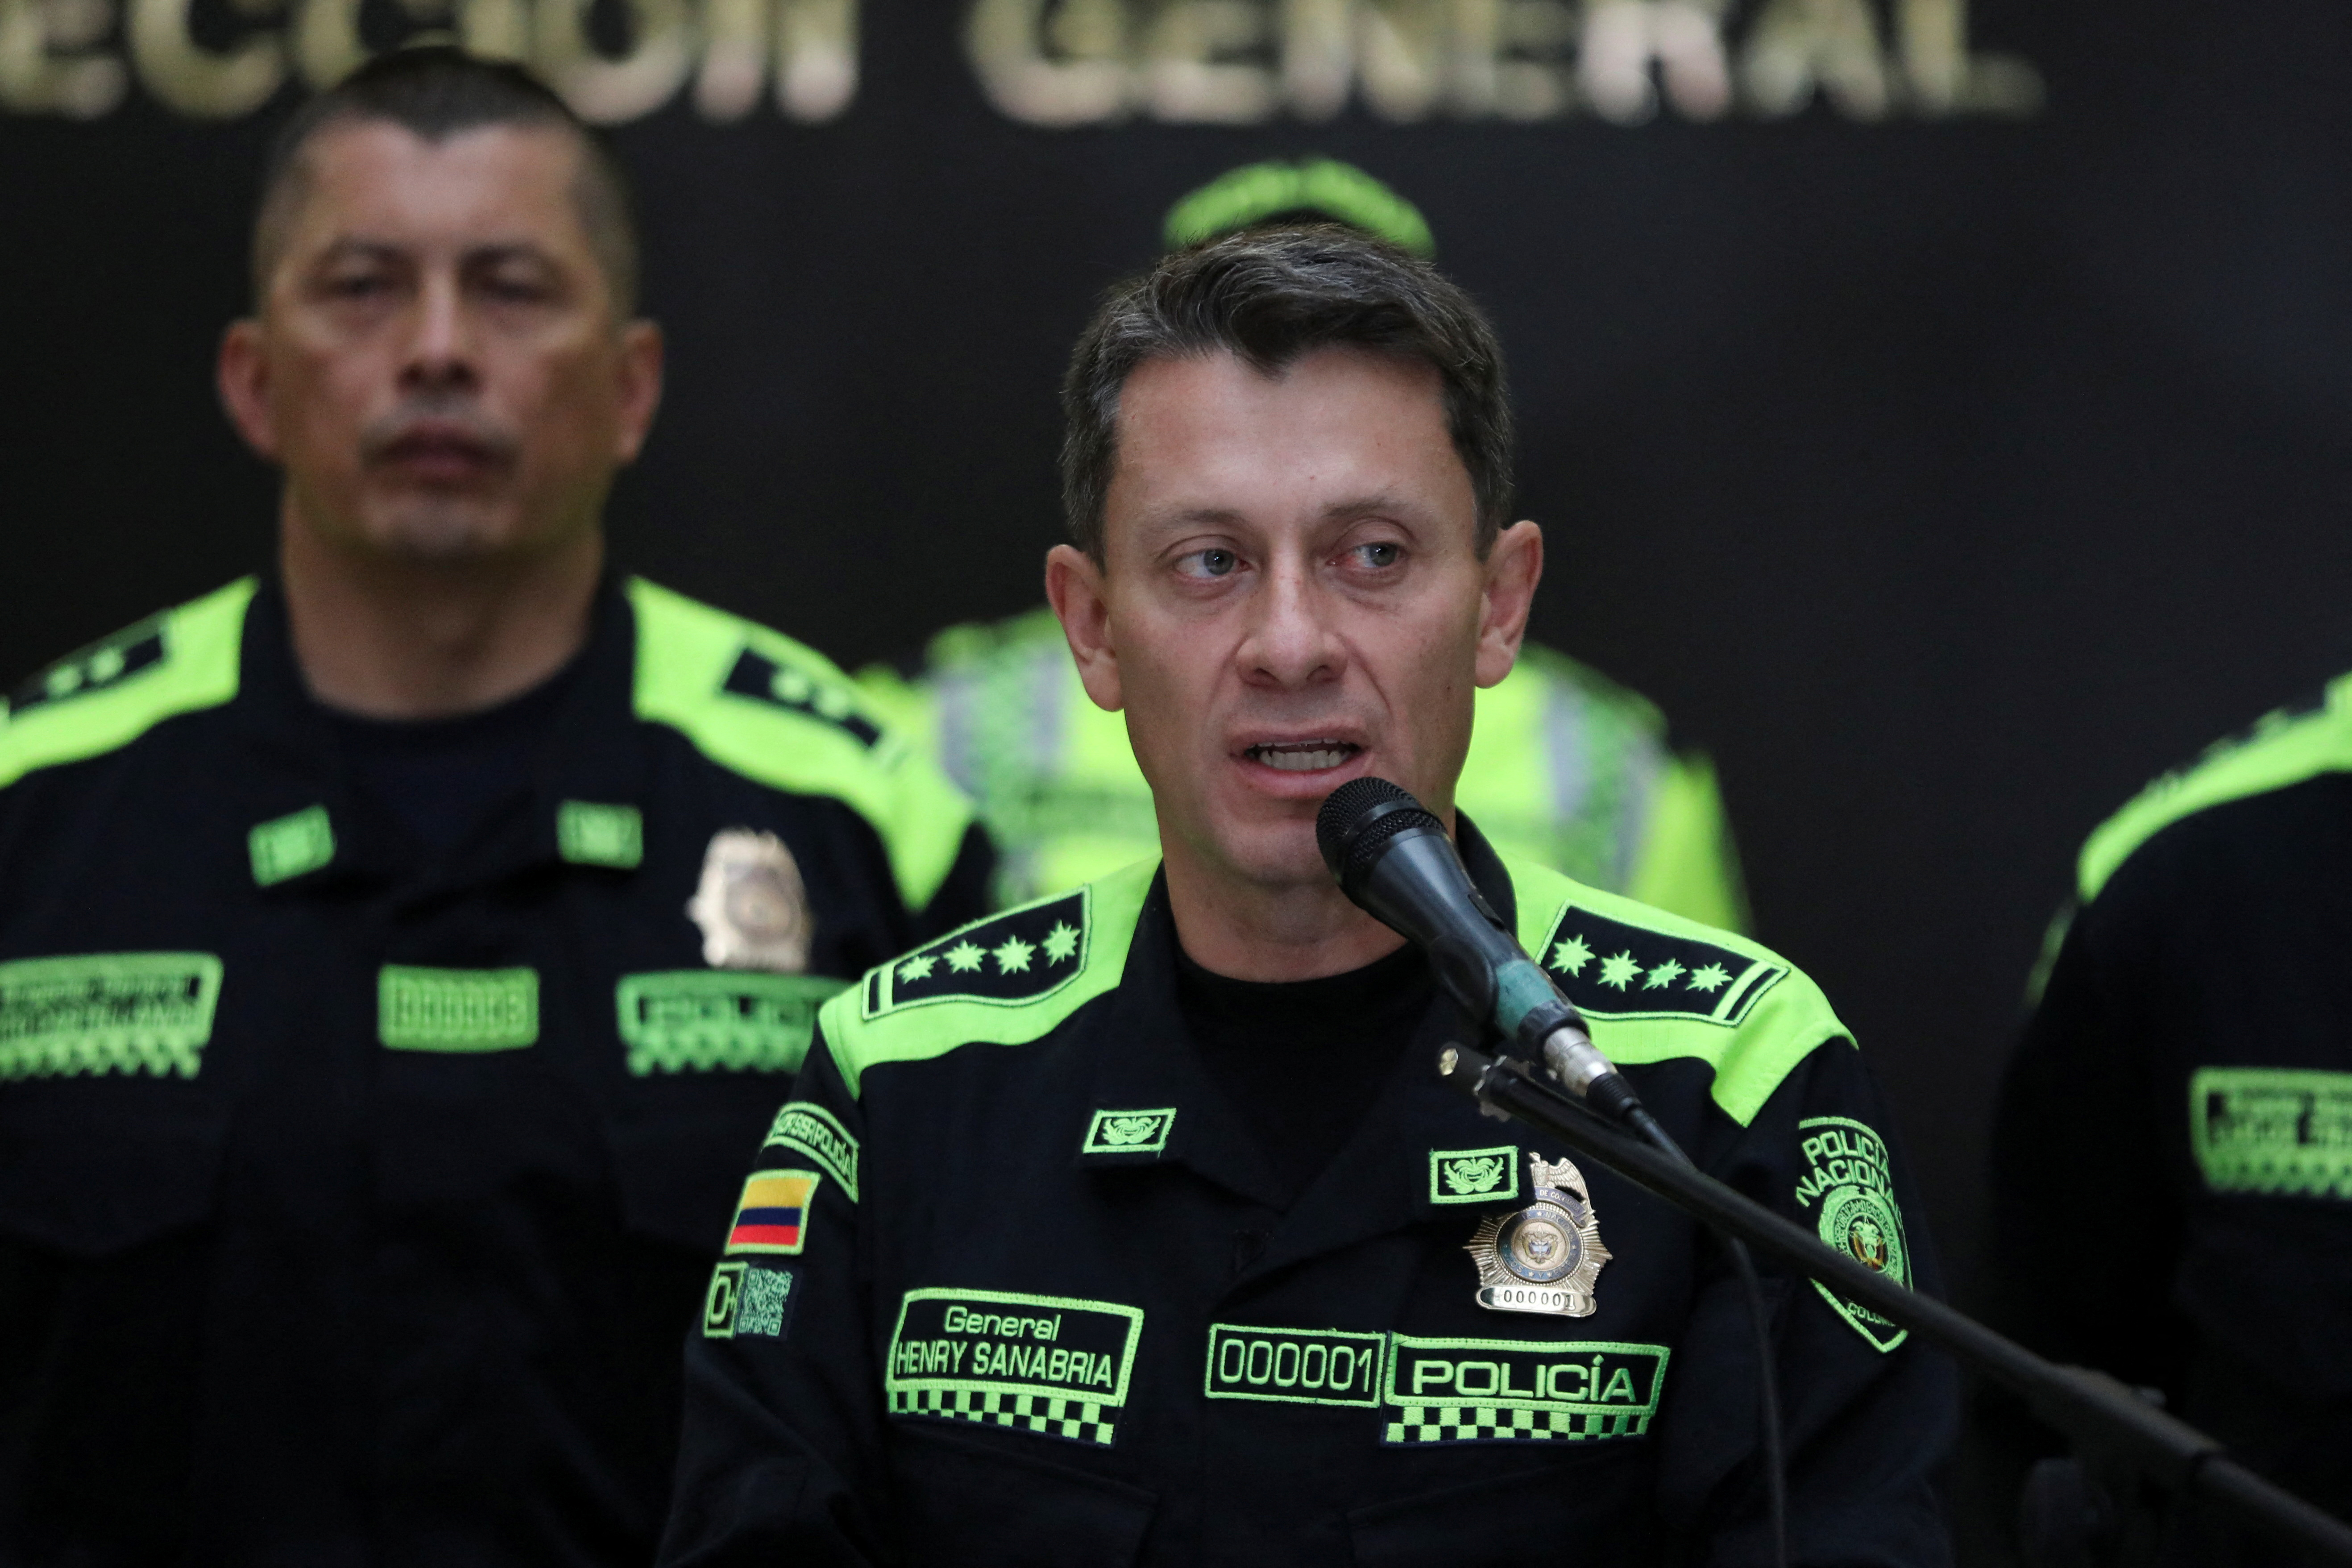 Critican a Henry Sanabria, director de la Policía, por sus declaraciones sobre la religión. REUTERS/Luisa Gonzalez